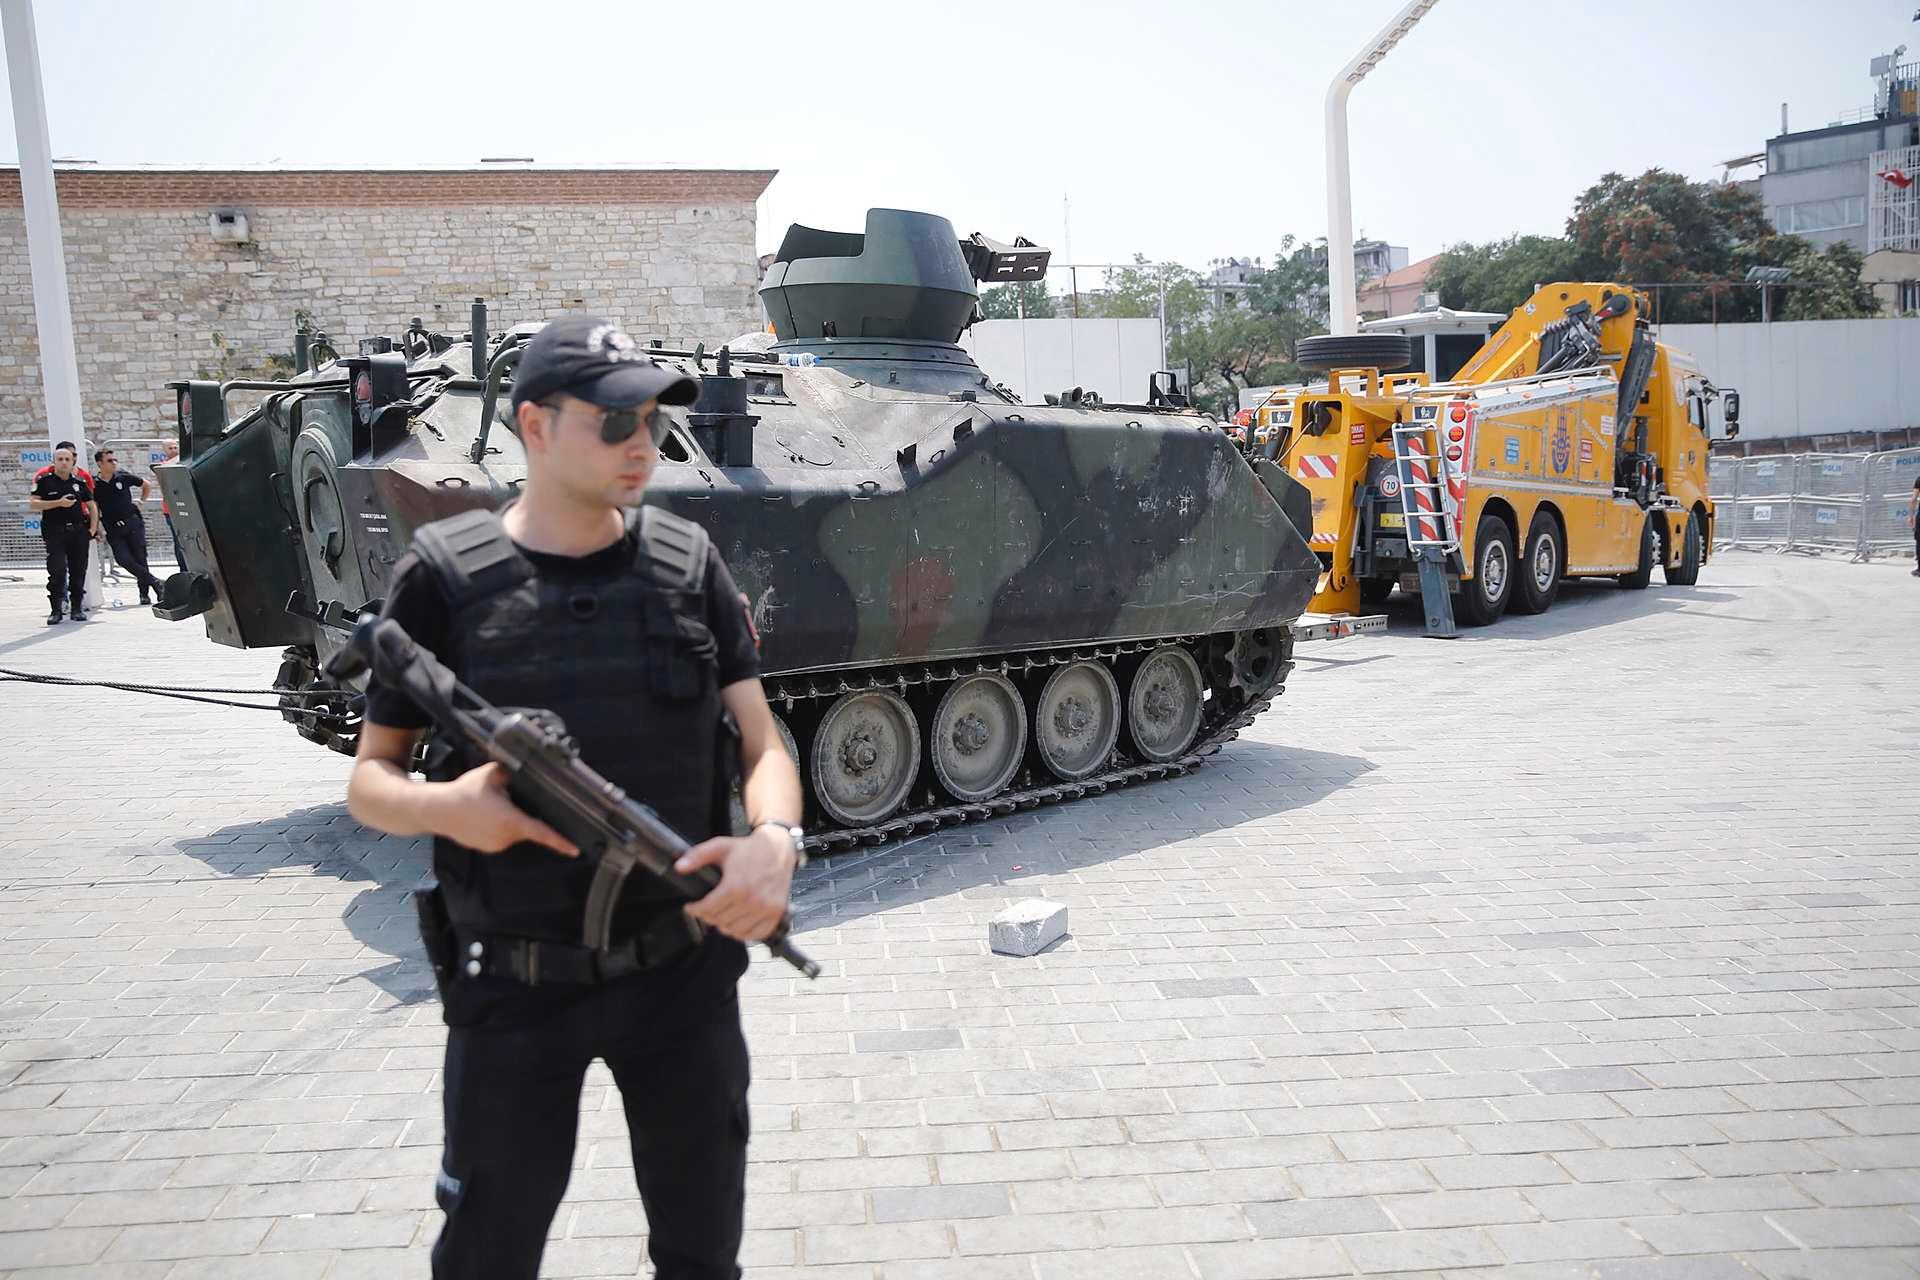 Et pansret personellkjøretøy som ble brukt i kuppforsøket taues bort fra Taksim-plassen i Istanbul.